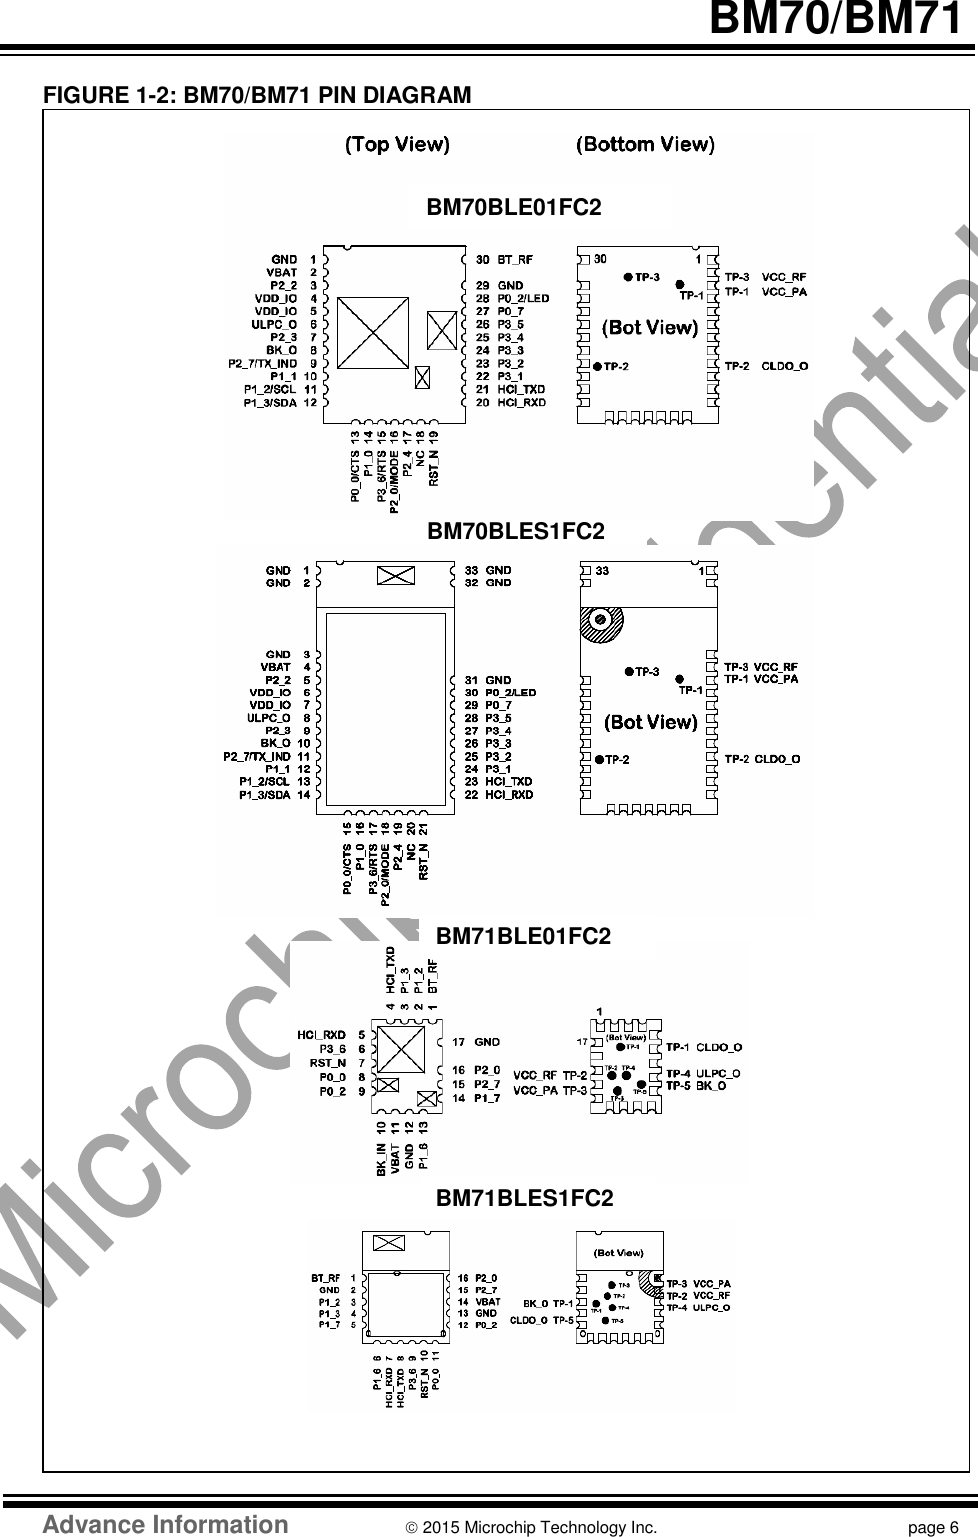   BM70/BM71   FIGURE 1-2: BM70/BM71 PIN DIAGRAM                                                                    Advance Information  2015 Microchip Technology Inc.  page 6  BM70BLES1FC2 BM70BLE01FC2 BM71BLE01FC2 BM71BLES1FC2 